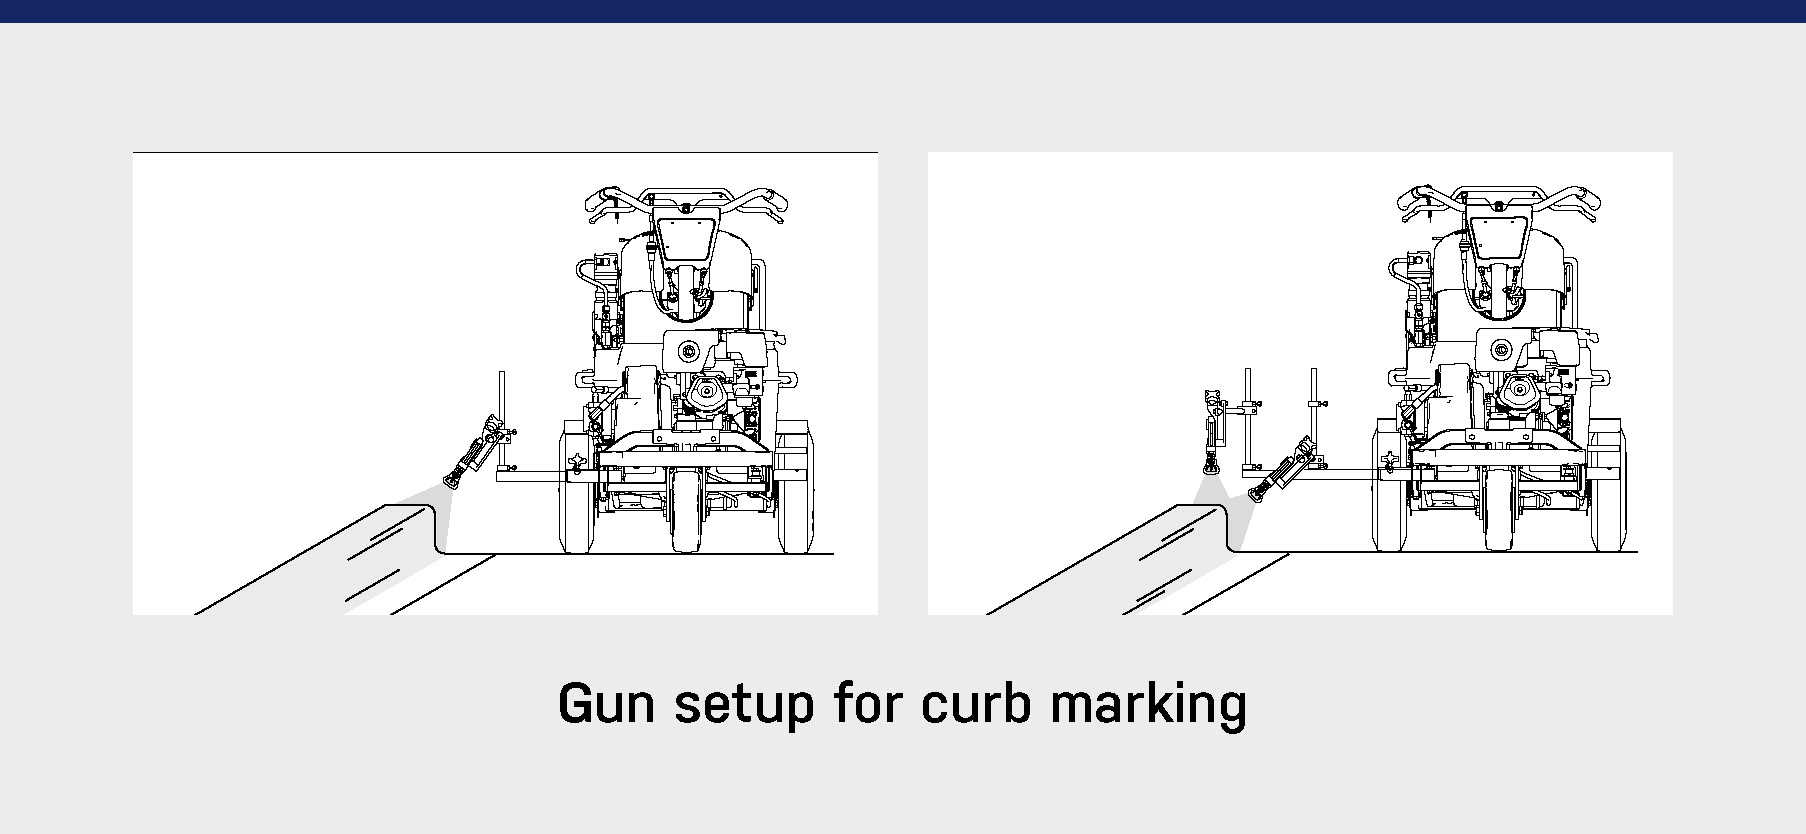 Configuración de pistola para la señalización de bordillos